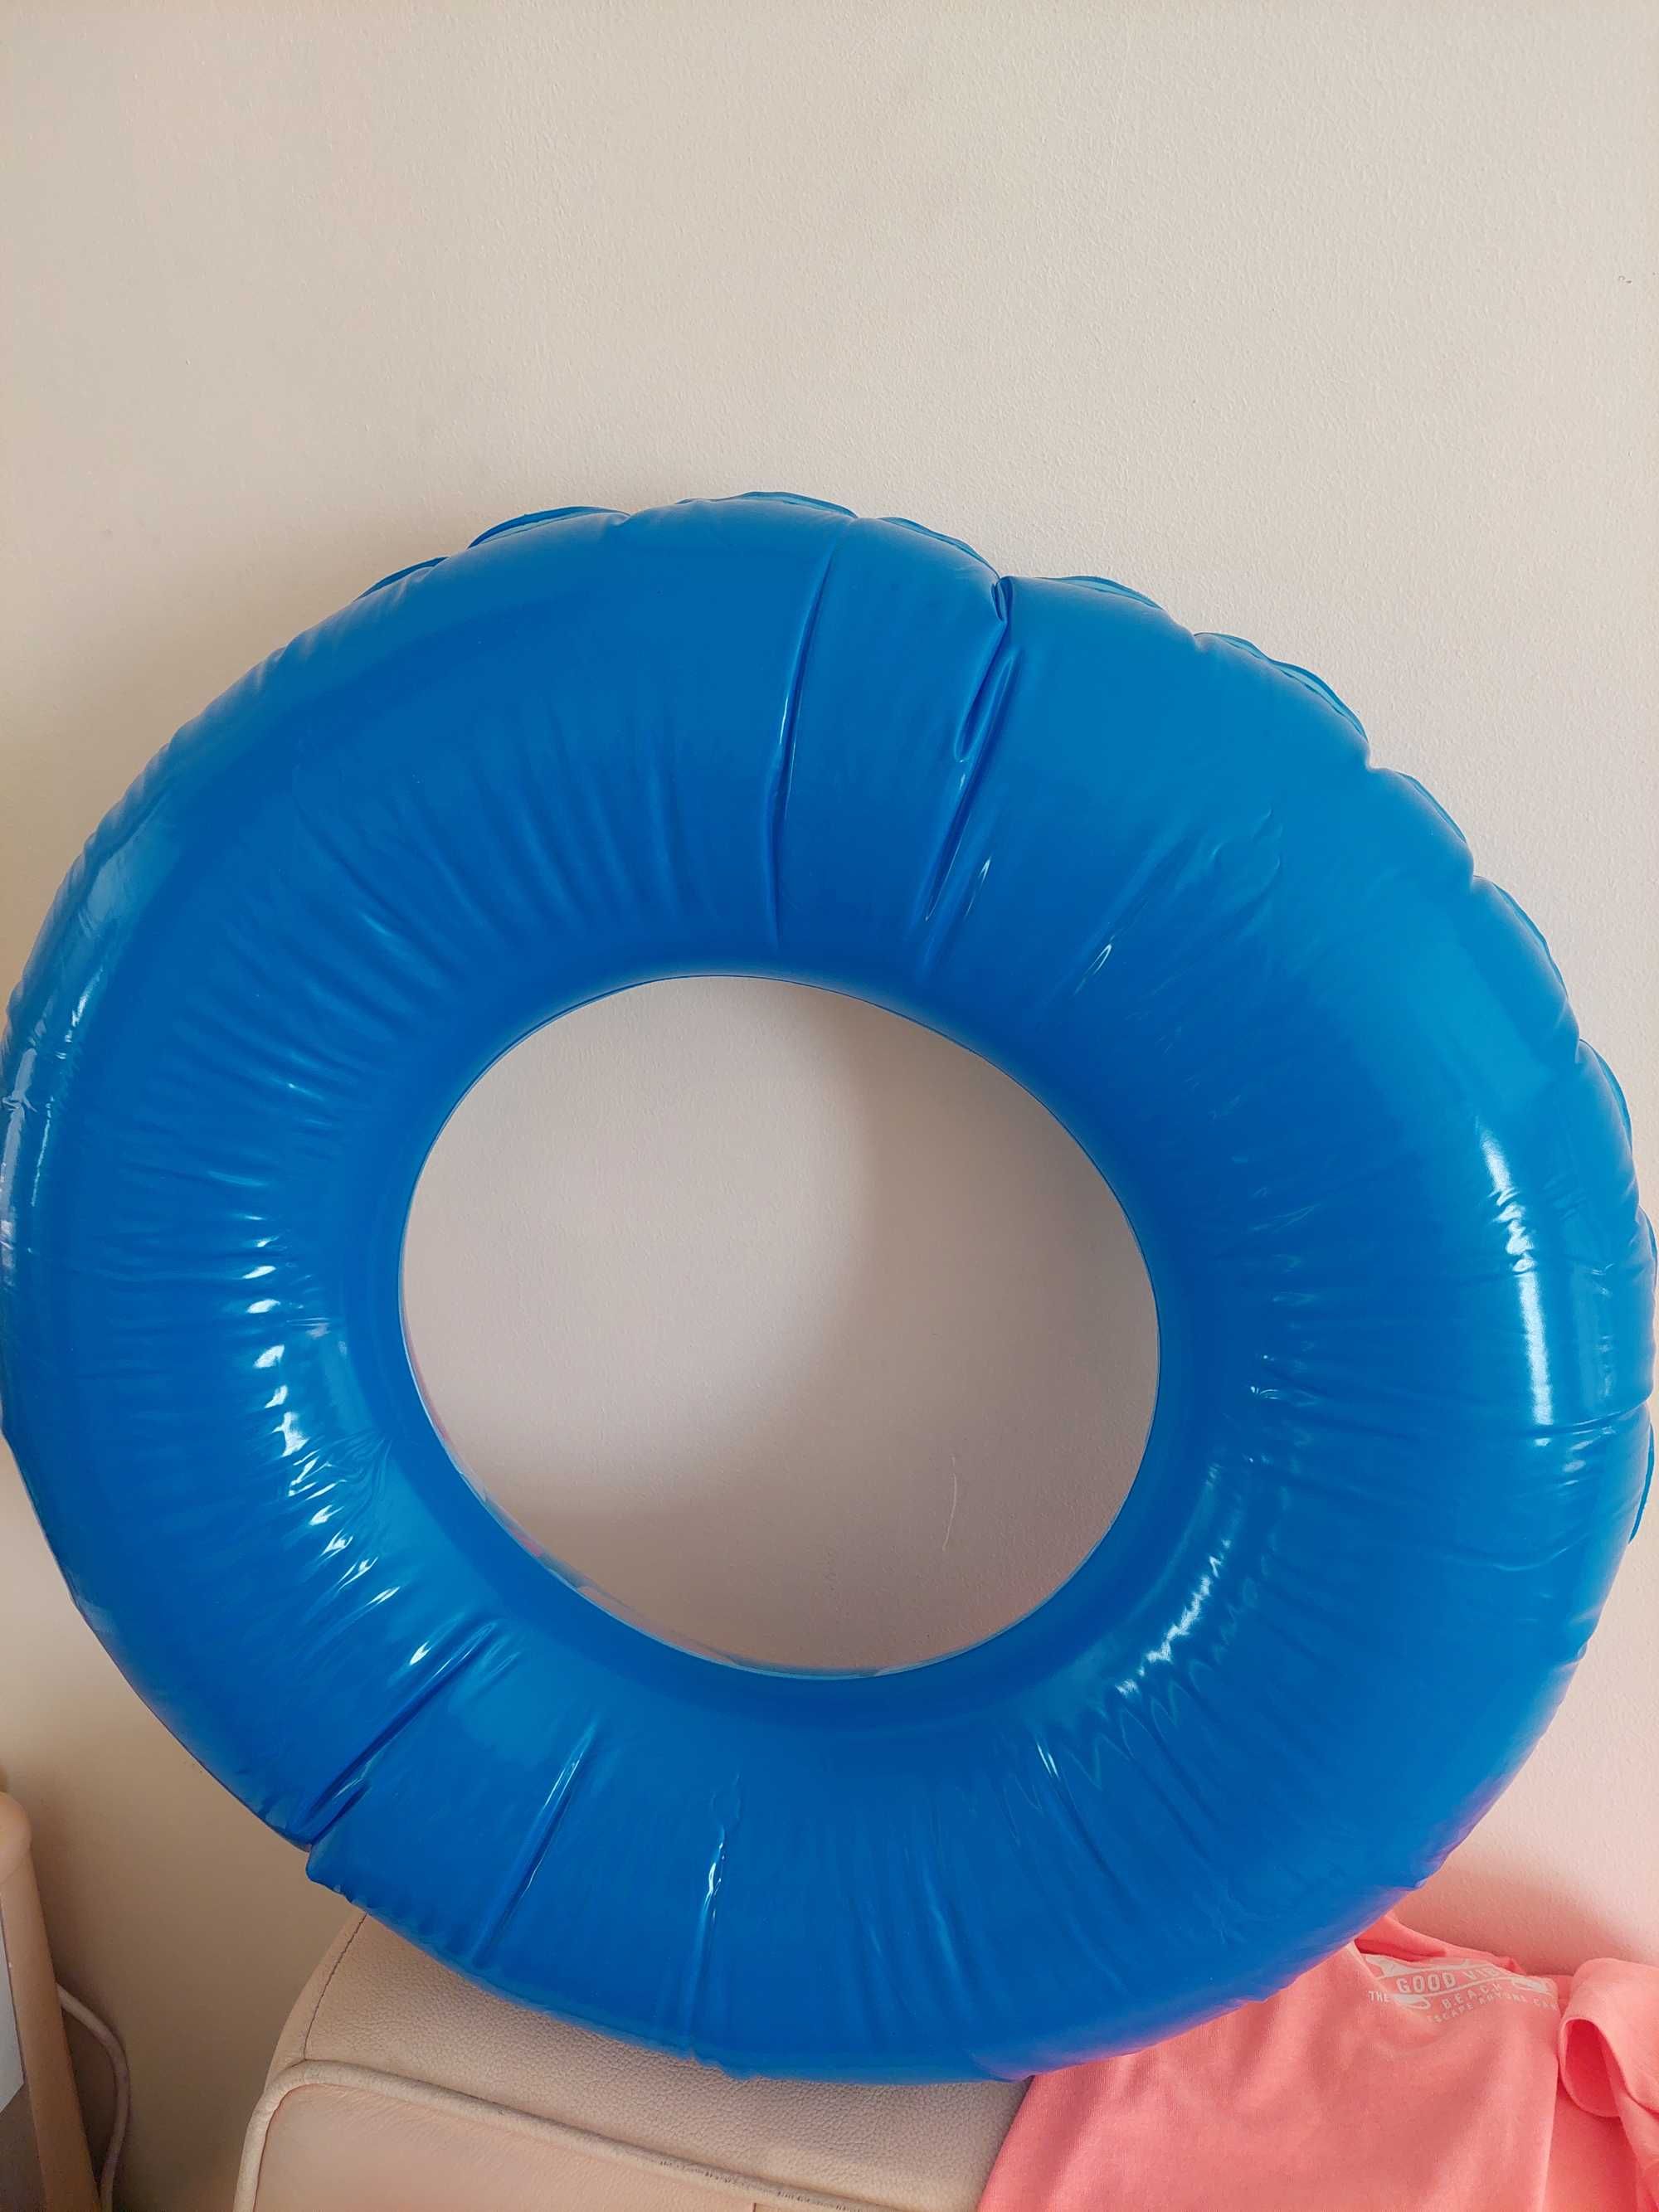 Детский Надувной балон размер 70см в диаметре